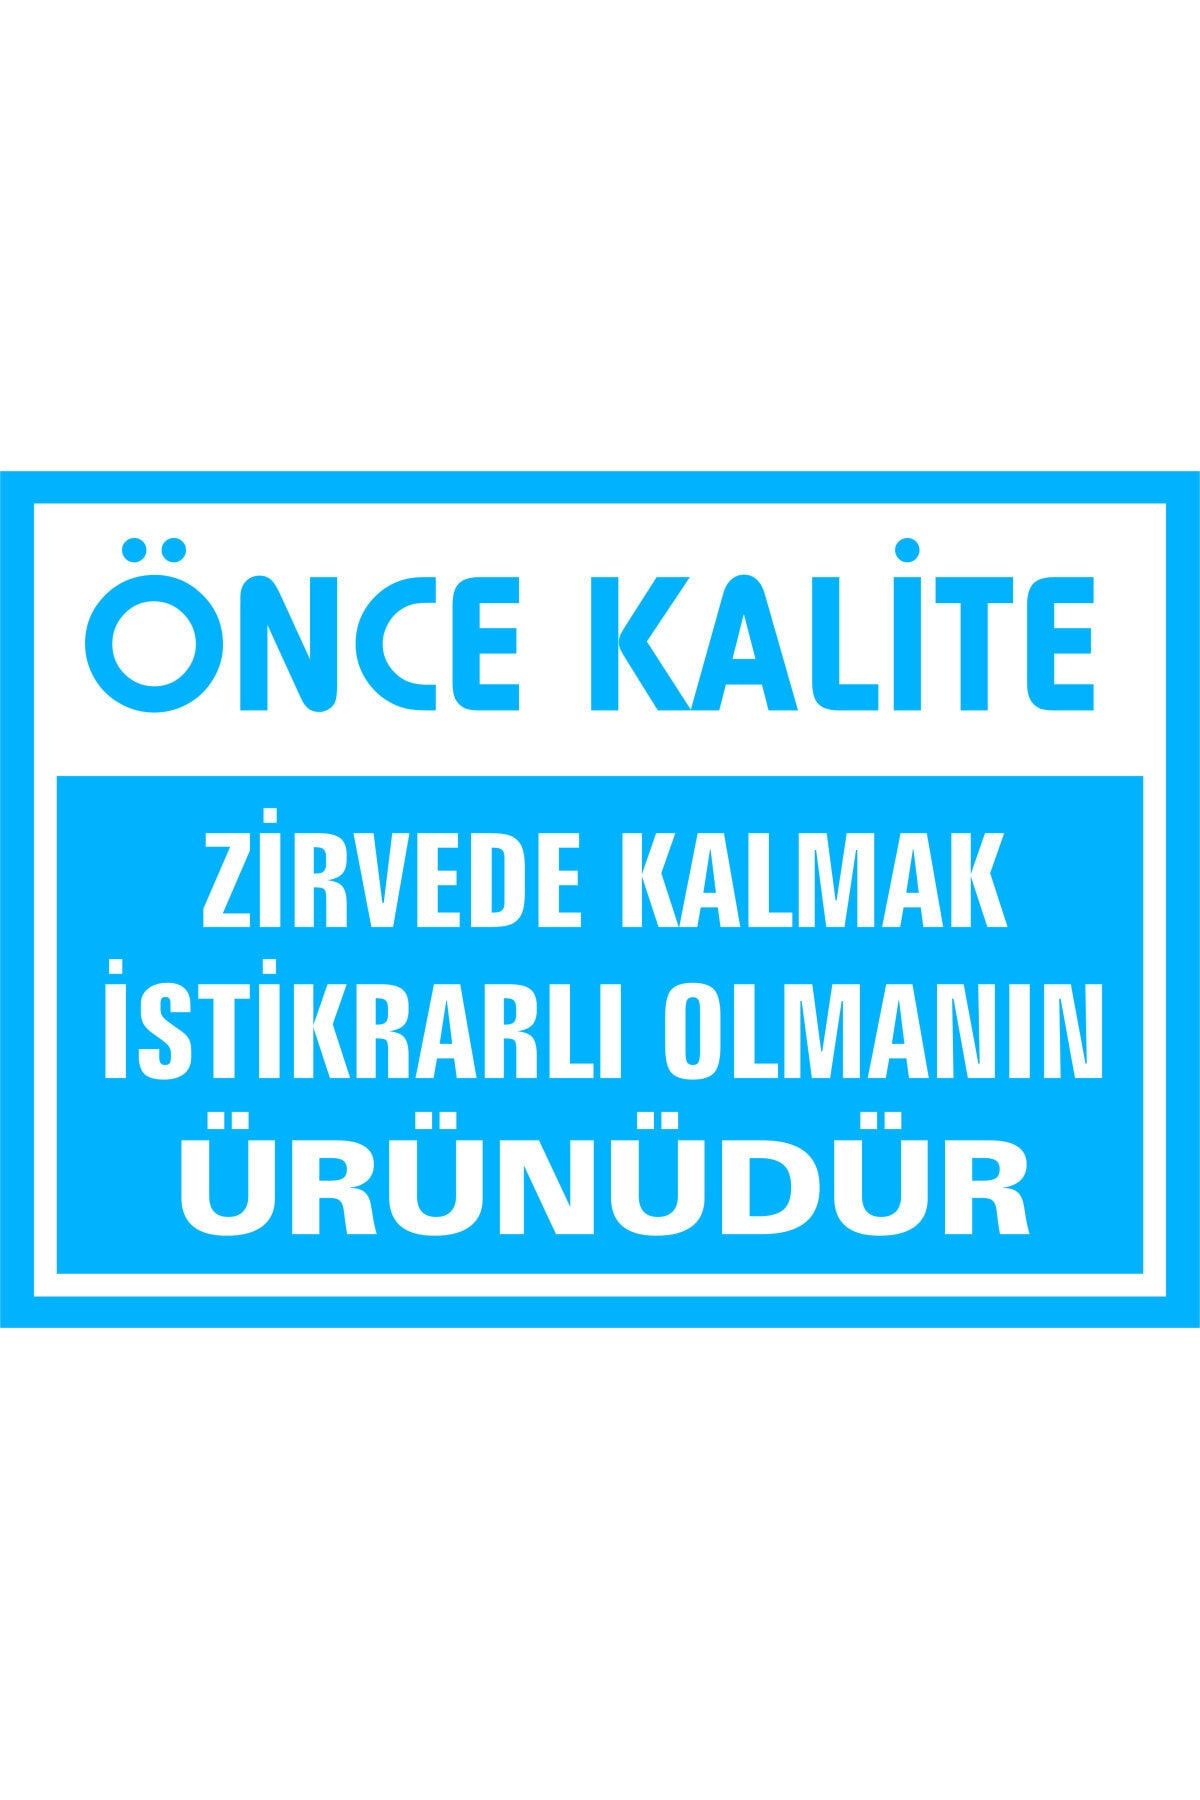 İzmir Serigrafi Önce Kalite Zirvede Kalmak Istikrarlı Olmanın Ürünüdür Galvaniz Uyarı Levhası 35 X 50 Cm